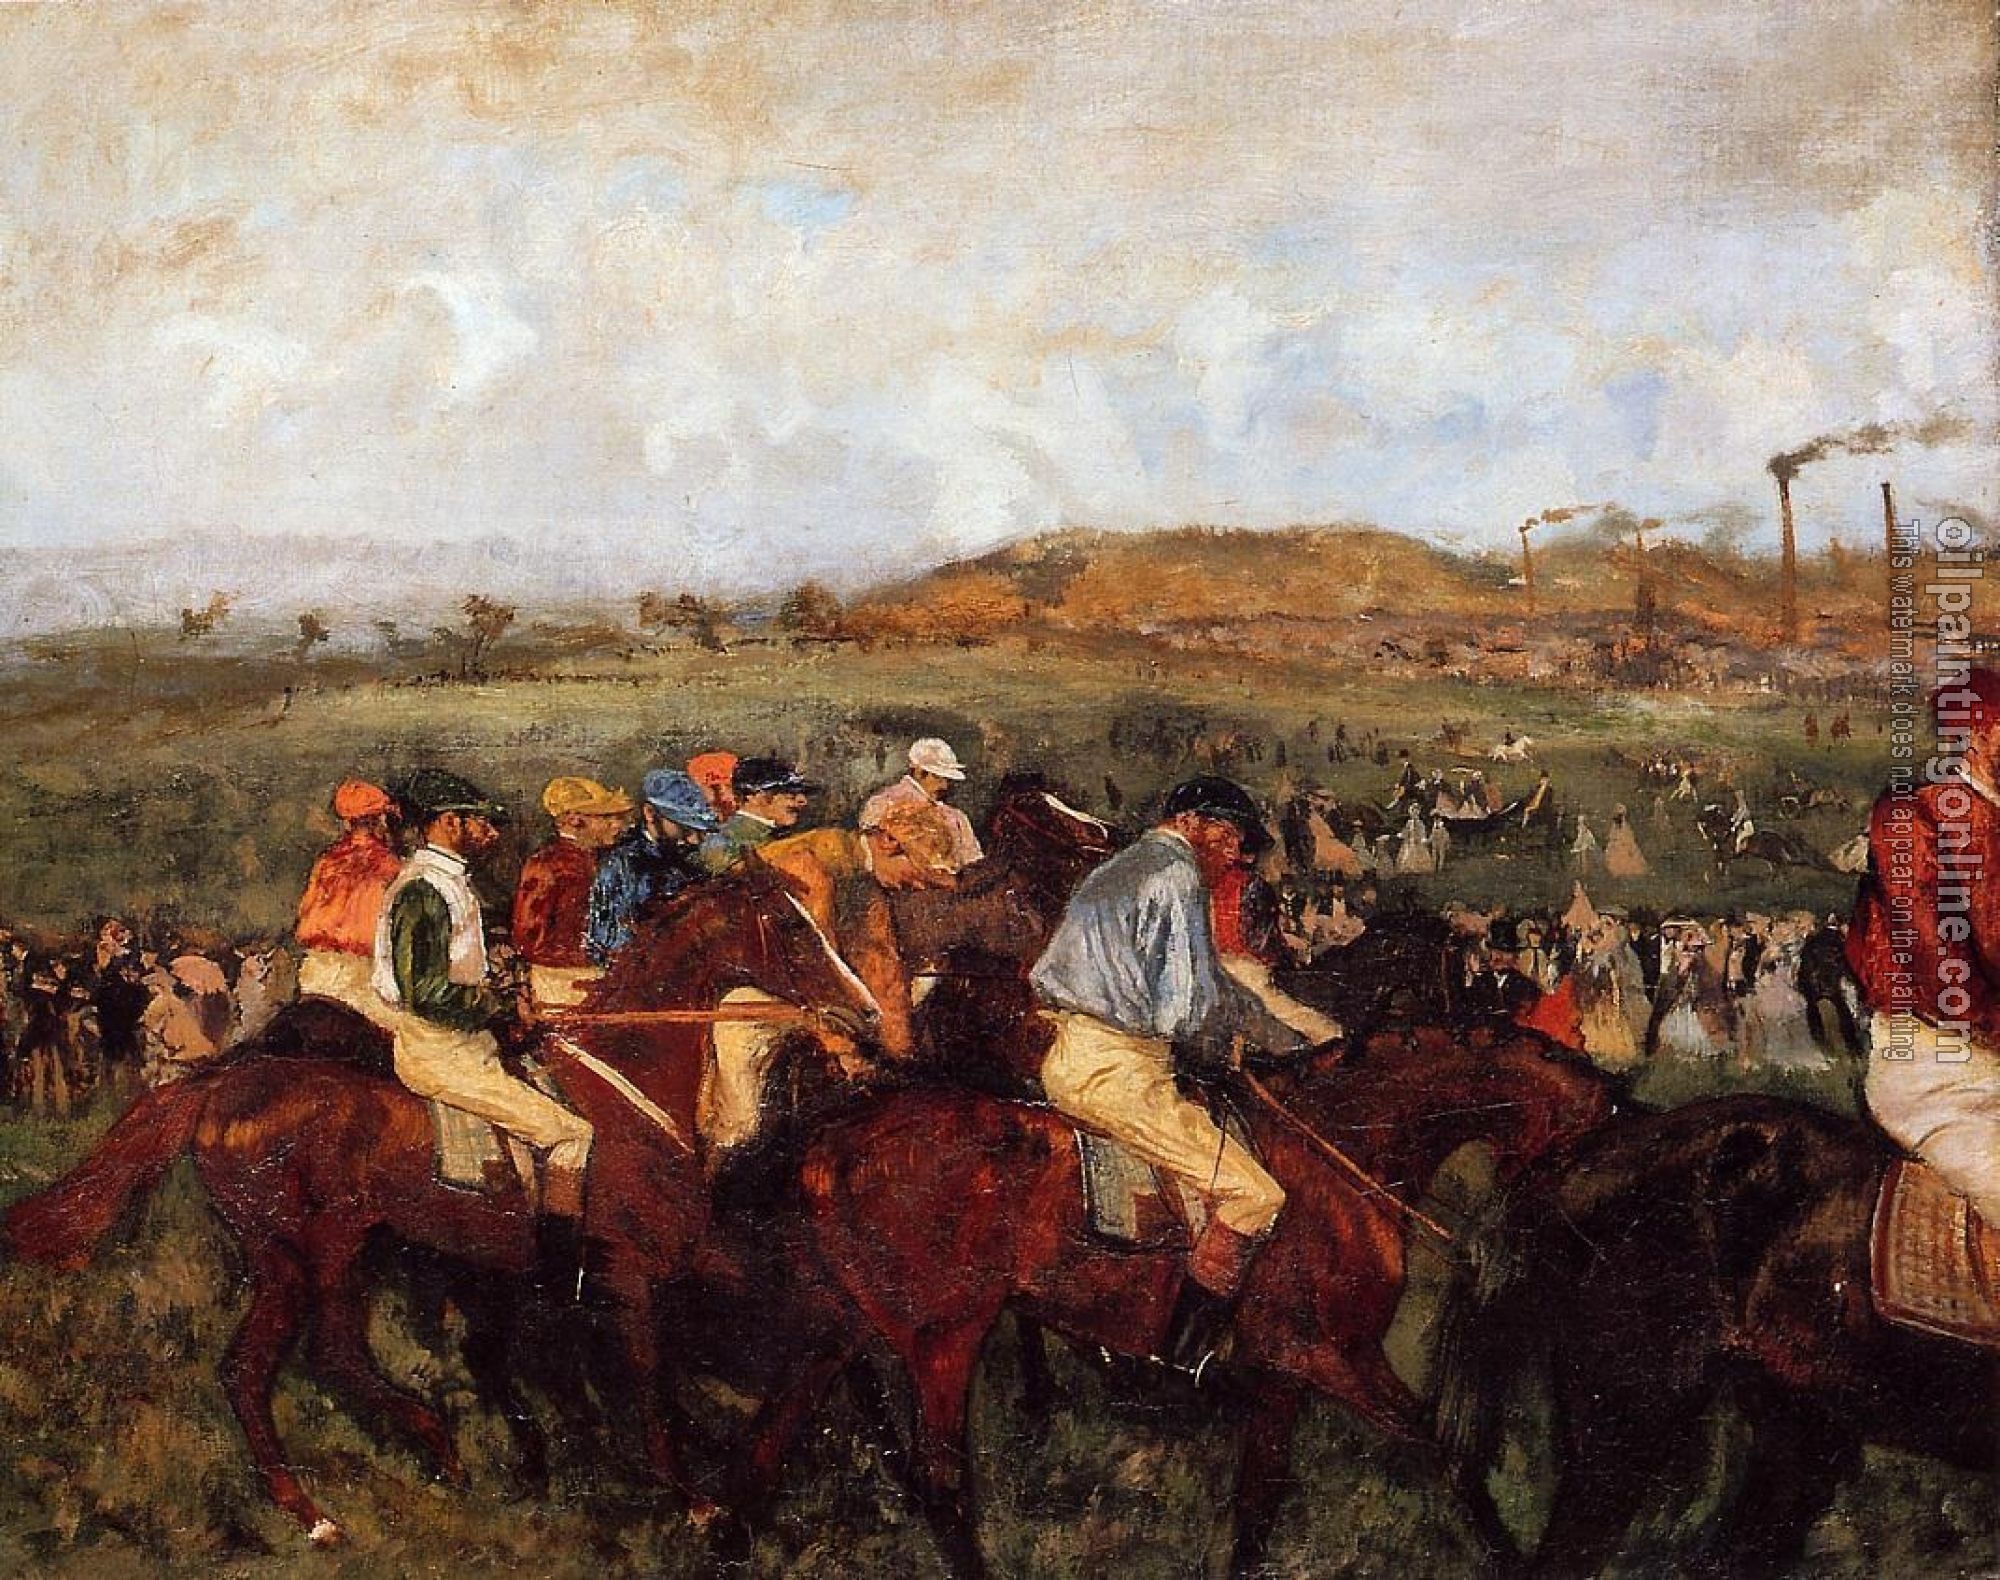 Degas, Edgar - The Gentlemen's Race   Before the Start